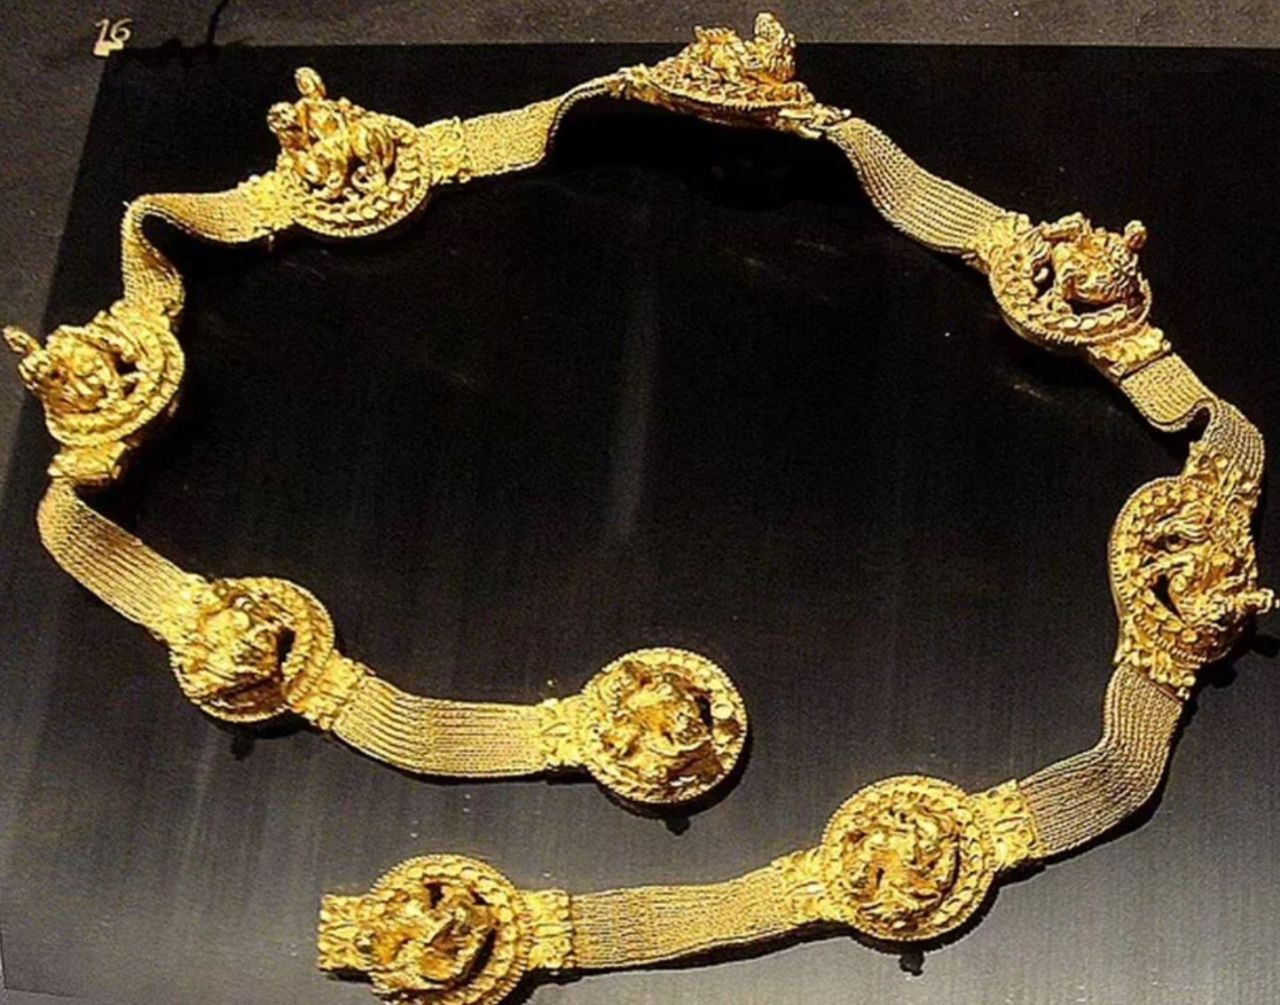 Dünyanın en büyük altın koleksiyonu! Taliban peşine düştü: 20 bin tane bulunuyor